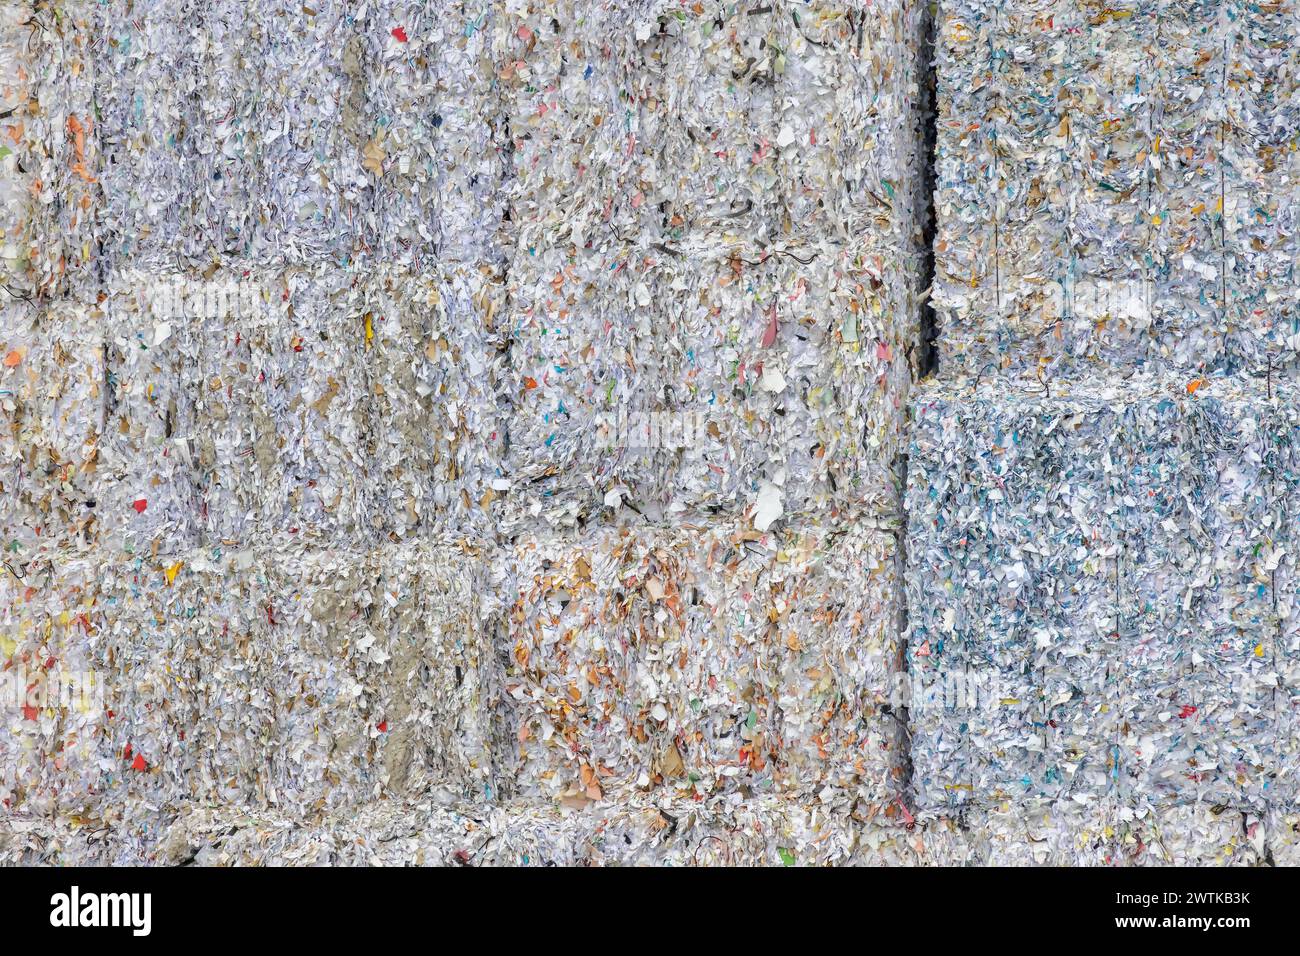 Balles empilées de papier recyclé néerlandais aux pays-Bas Banque D'Images